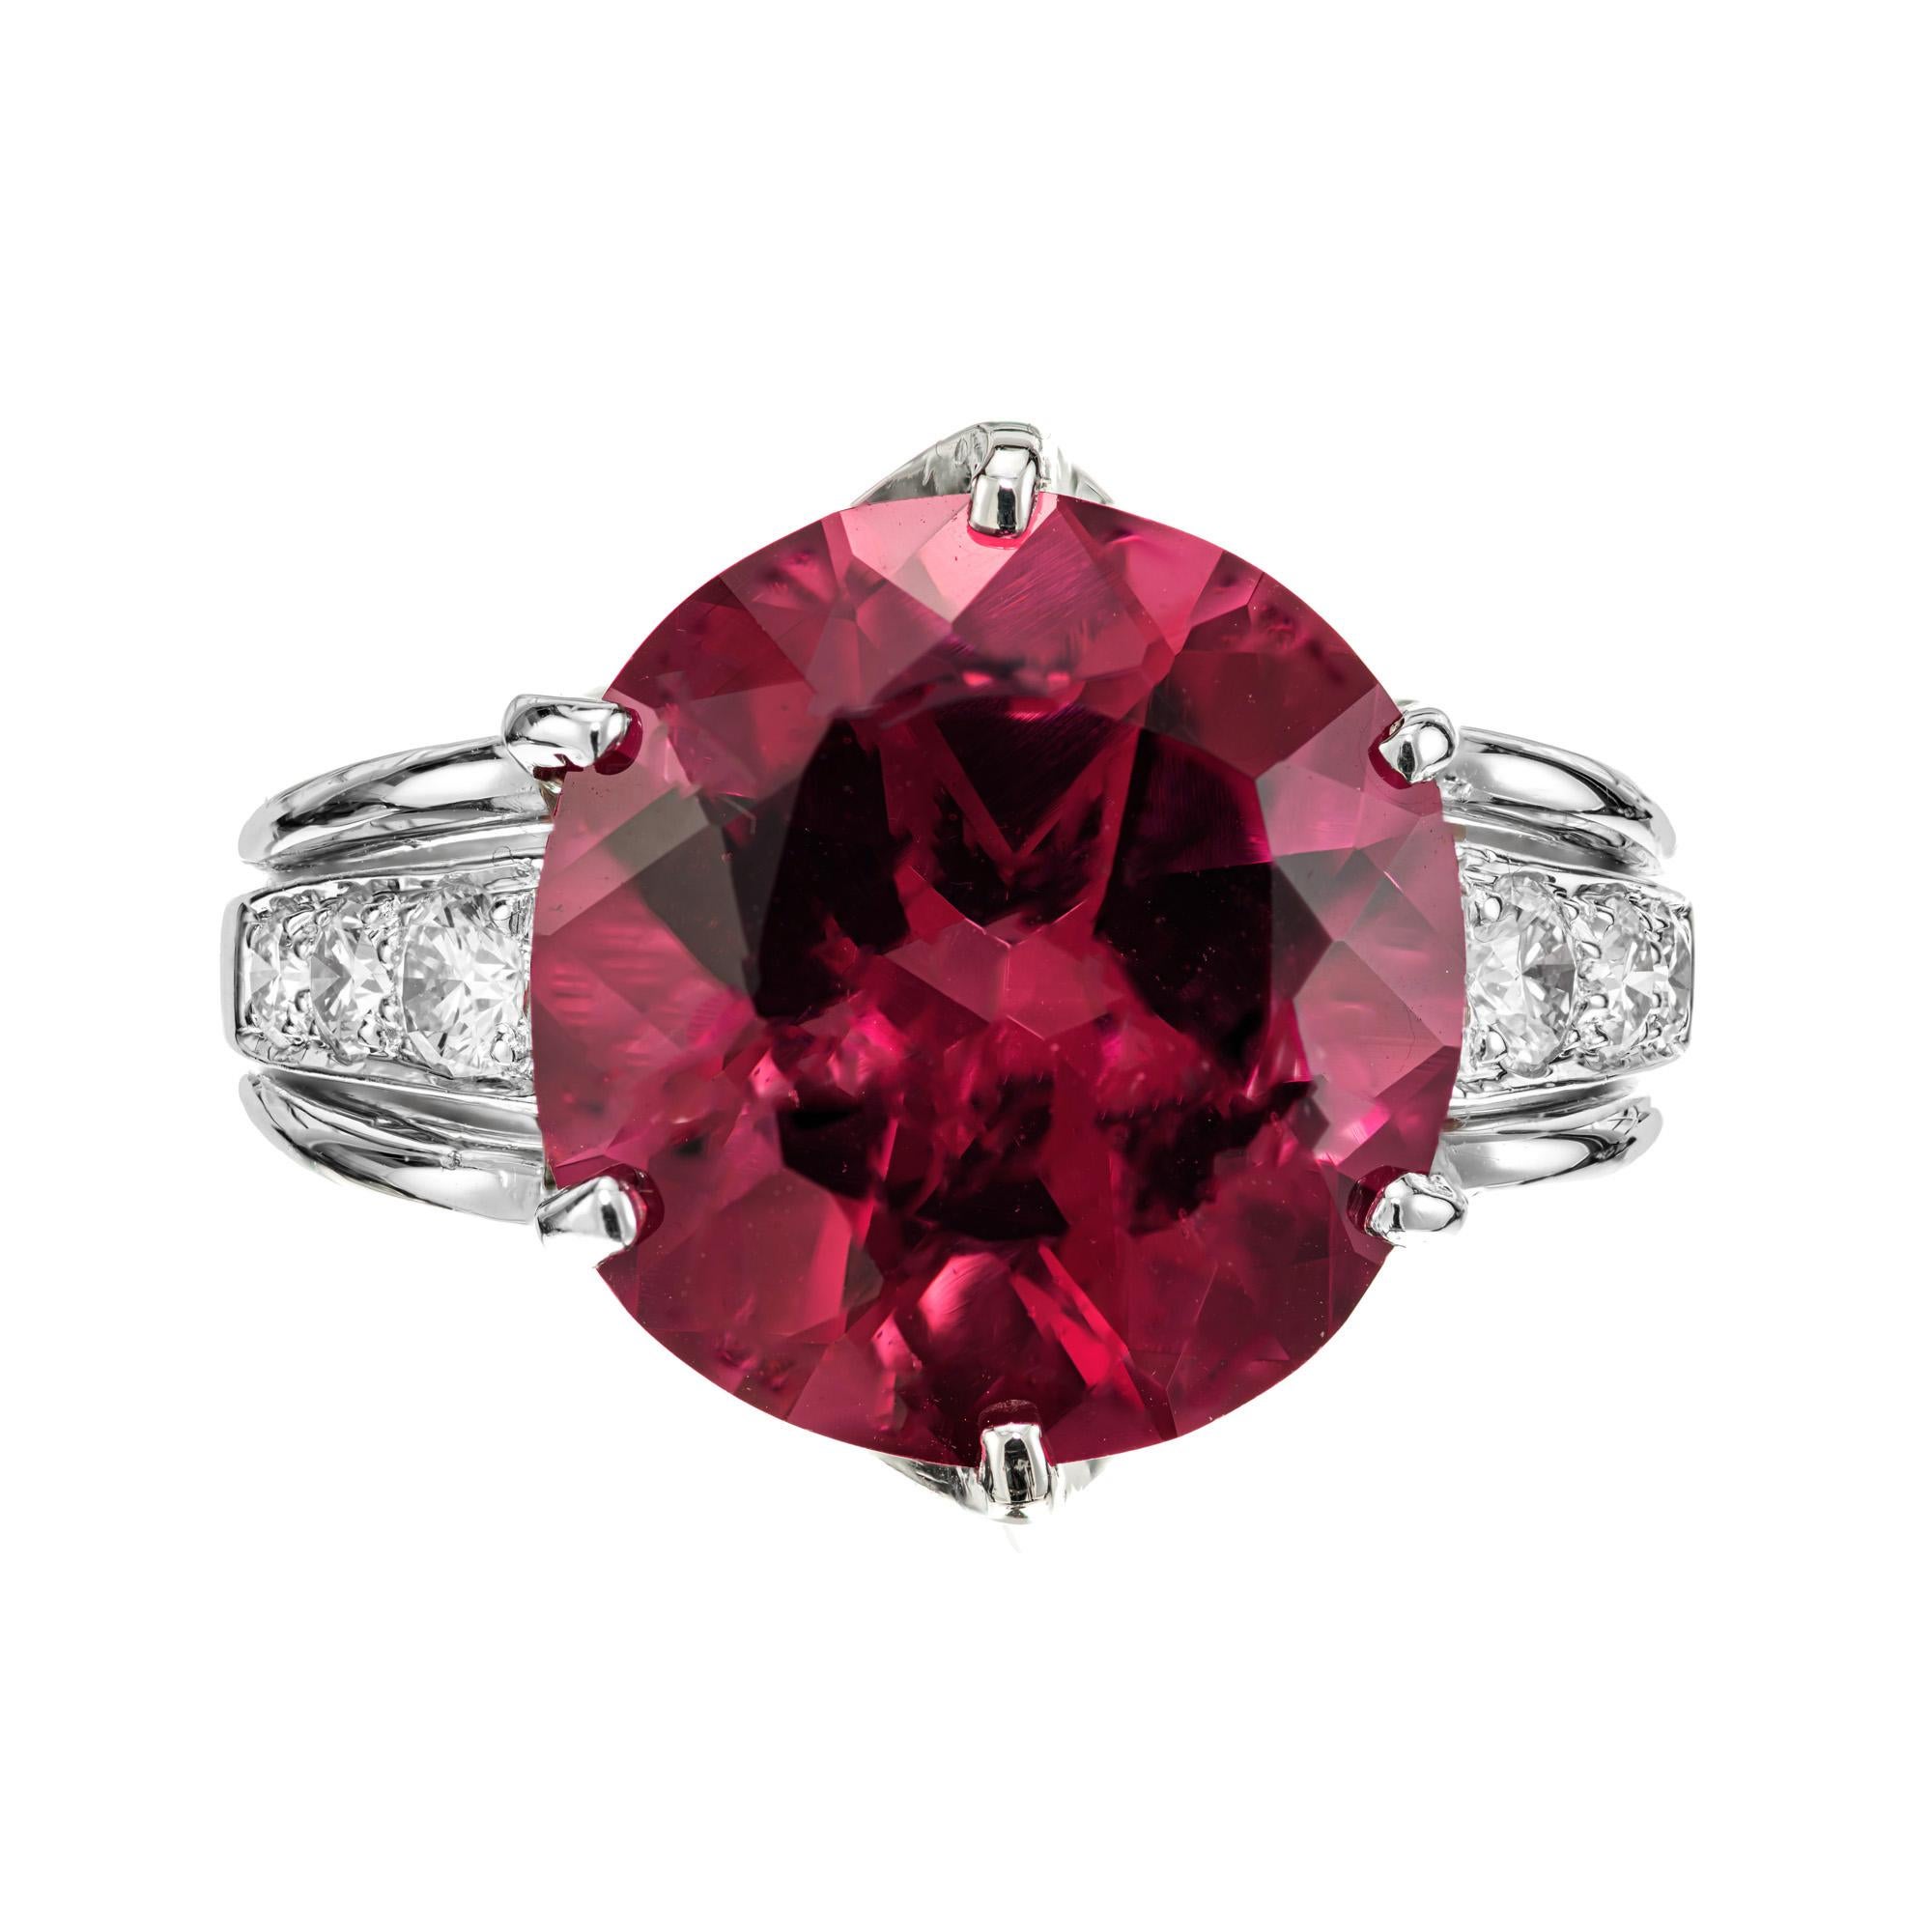 Leuchtend rosa Rubelit-Turmalin-Diamant-Platinring. Großer runder Turmalin von 8,14 Karat in seiner ursprünglichen Platinfassung aus den 1950er Jahren mit 6 runden Diamanten als Akzent. 

Ein runder, tief rötlich-rosa Rubellit-Turmalin,